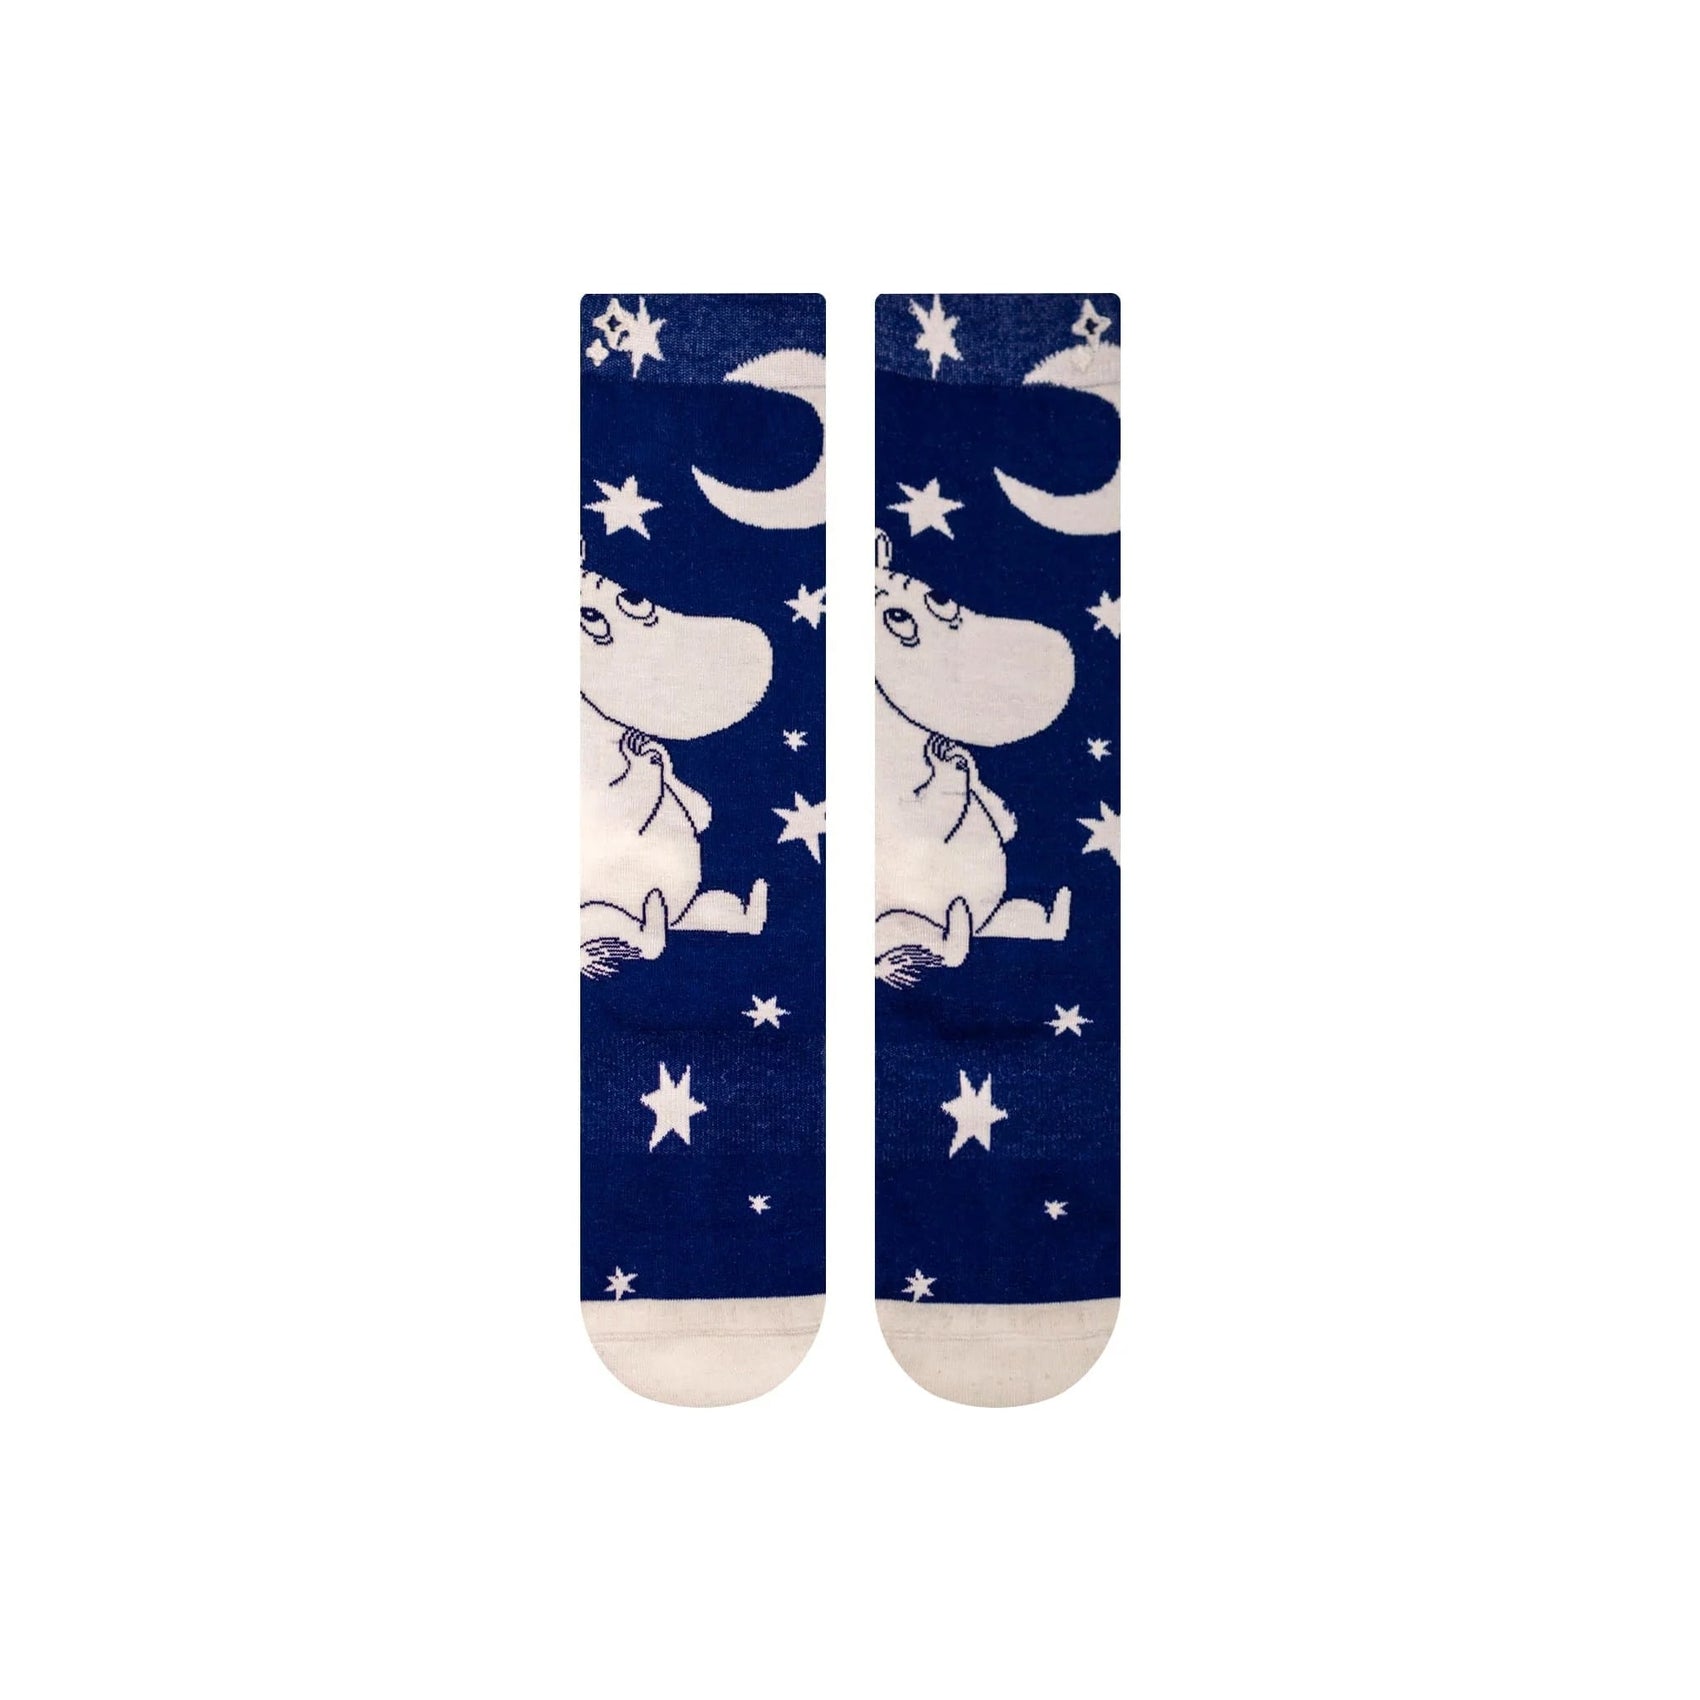 The Moomintrolls Nvrlnd Socks, Stars